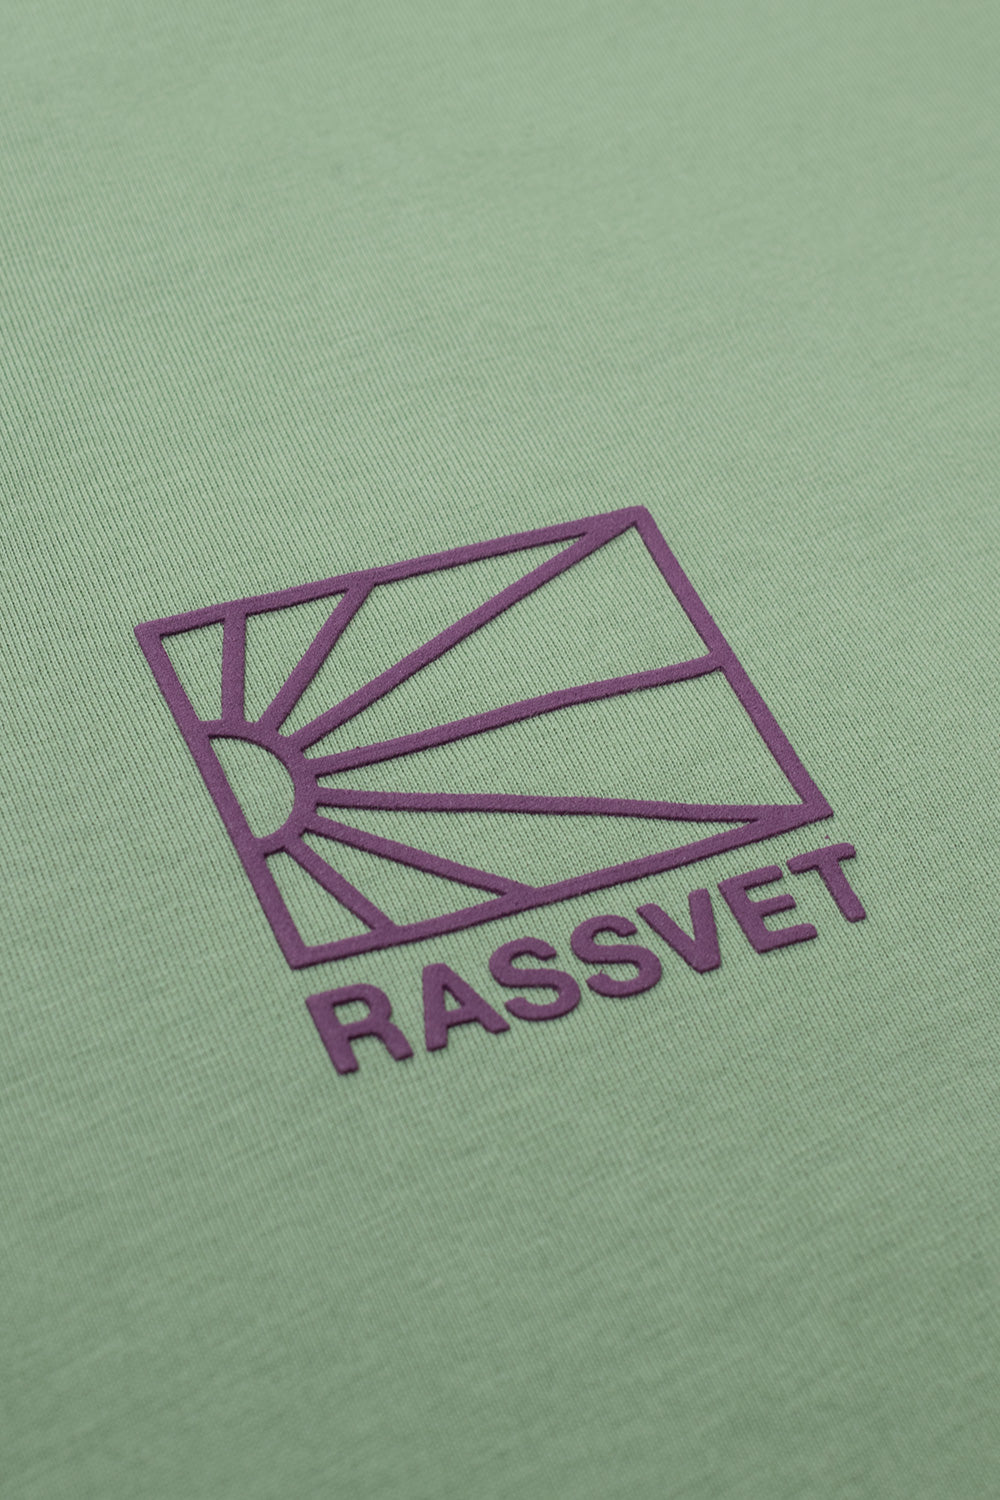 Rassvet (PACCBET) Mini Logo T-Shirt Khaki - BONKERS